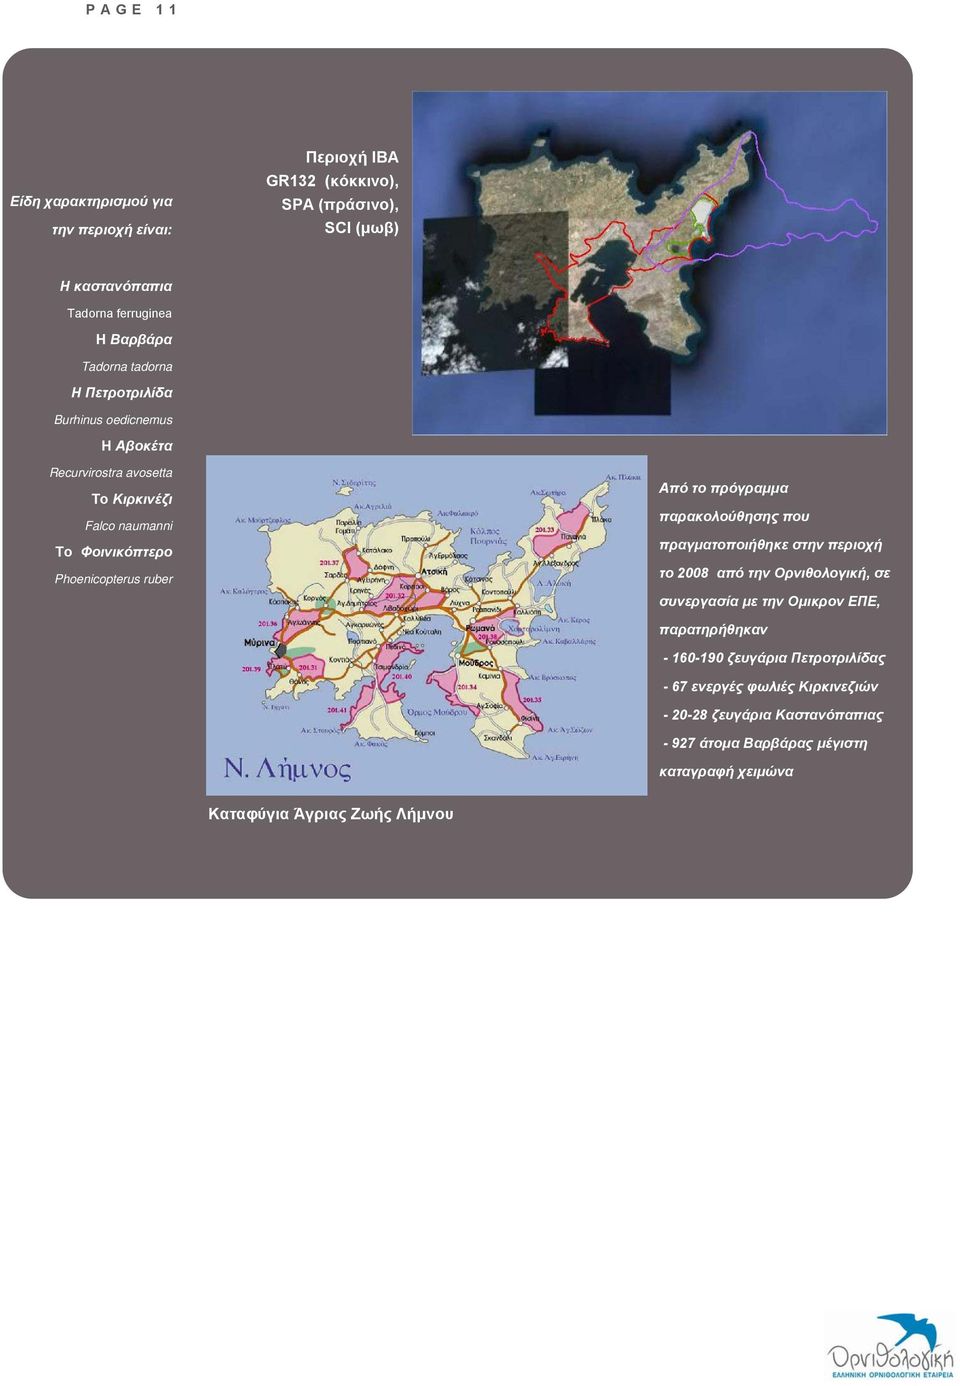 το πρόγραμμα παρακολούθησης που πραγματοποιήθηκε στην περιοχή το 2008 από την Ορνιθολογική, σε συνεργασία με την Ομικρον ΕΠΕ, παρατηρήθηκαν - 160-190